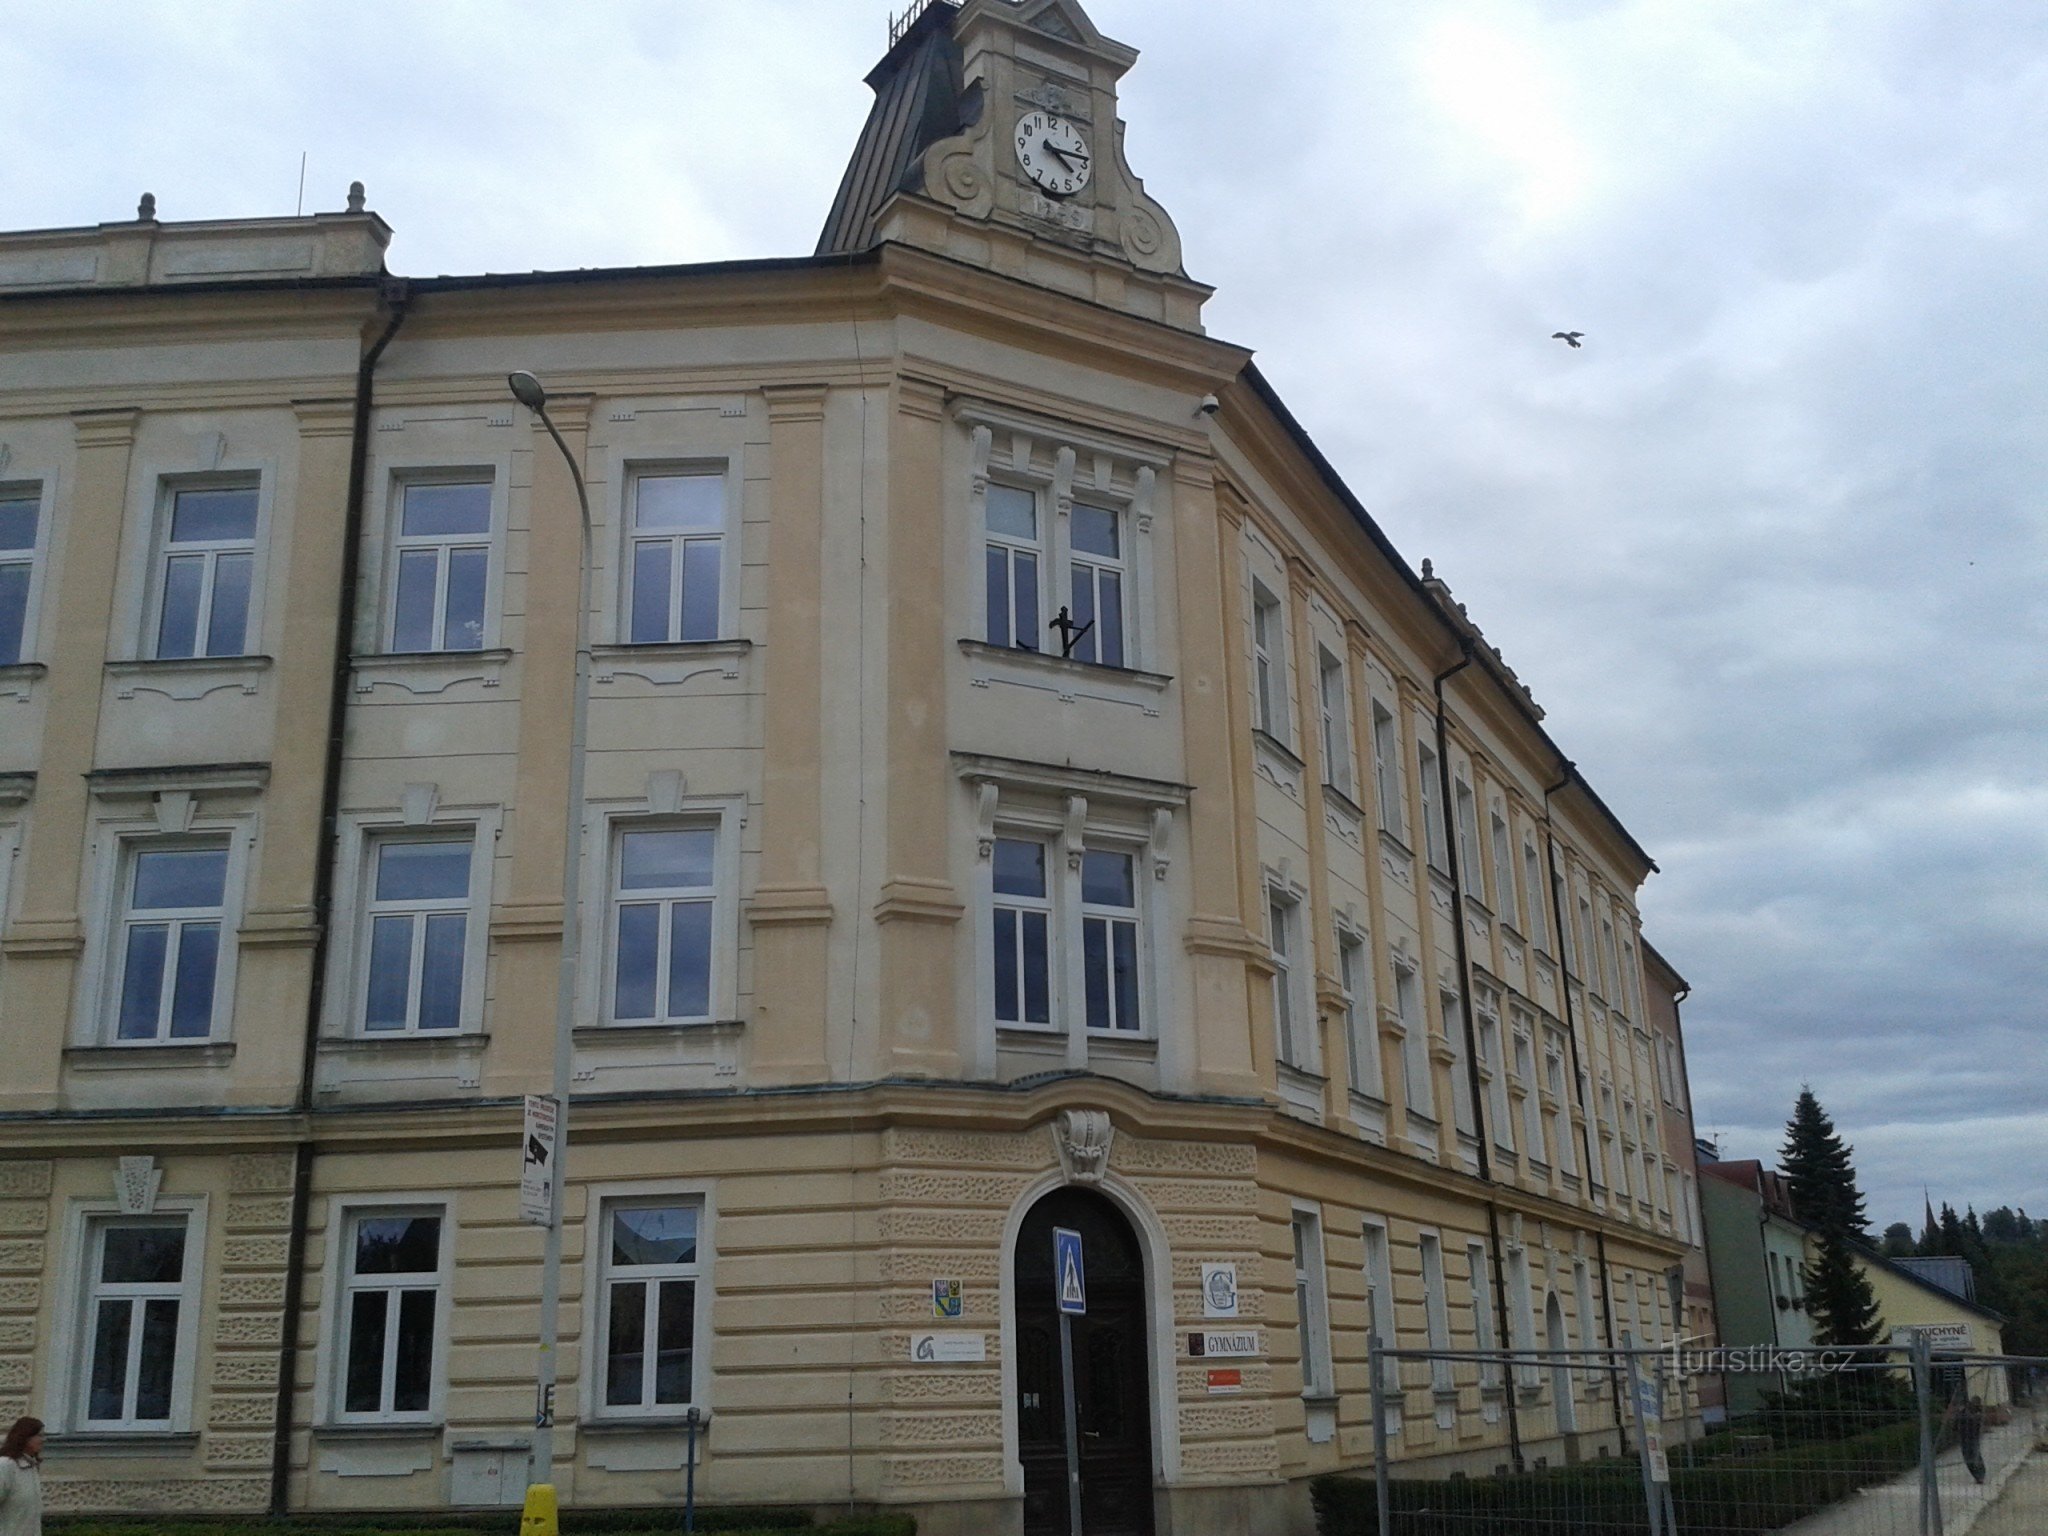 Zábřeh - gymnasiumbygning - den første og ældste gymnasieskole i det nordvestlige Mähren